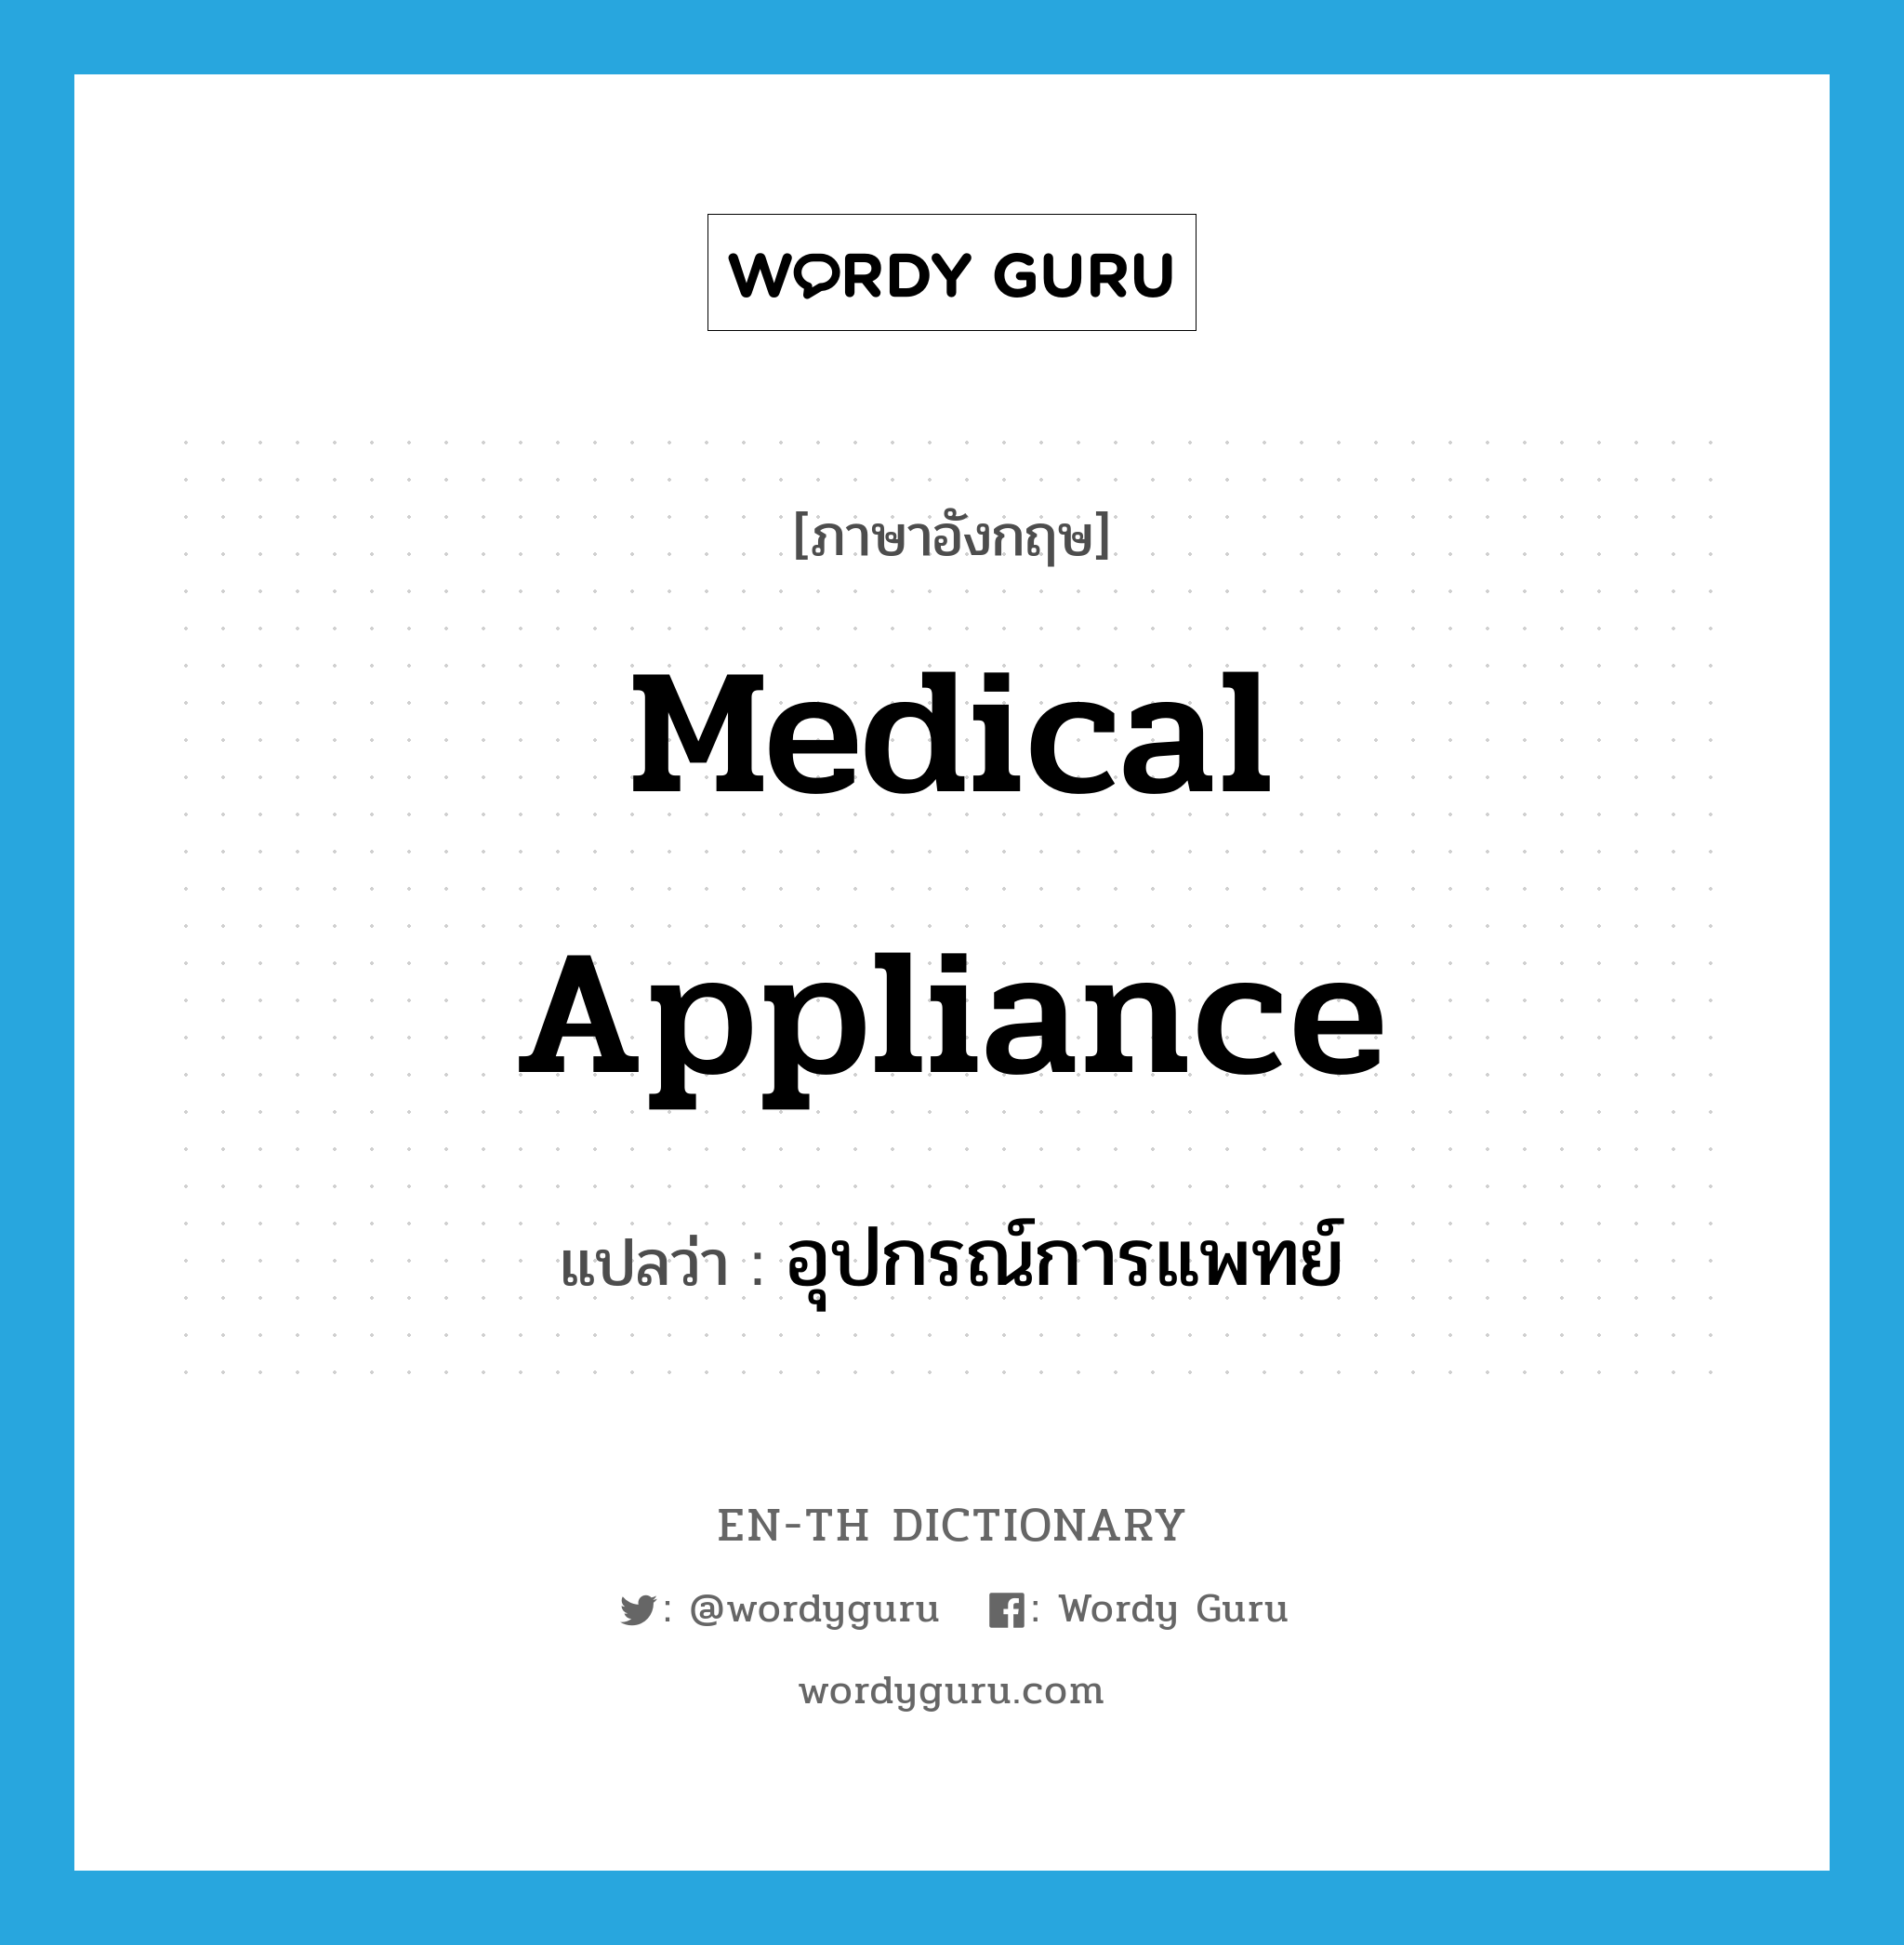 medical appliance แปลว่า?, คำศัพท์ภาษาอังกฤษ medical appliance แปลว่า อุปกรณ์การแพทย์ ประเภท N หมวด N